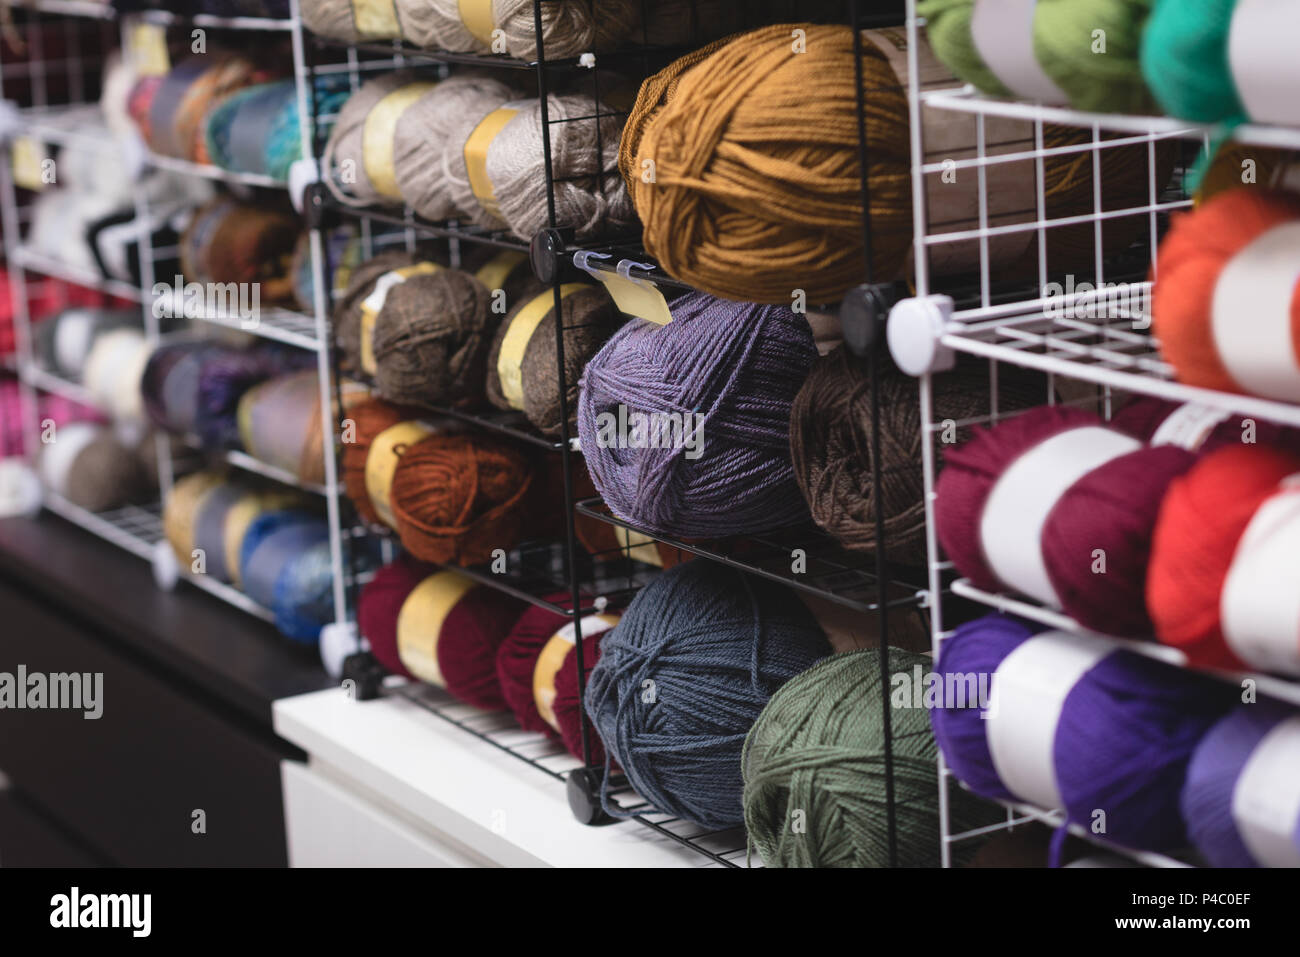 Pelote de laine multicolores conservés sur la tablette Banque D'Images